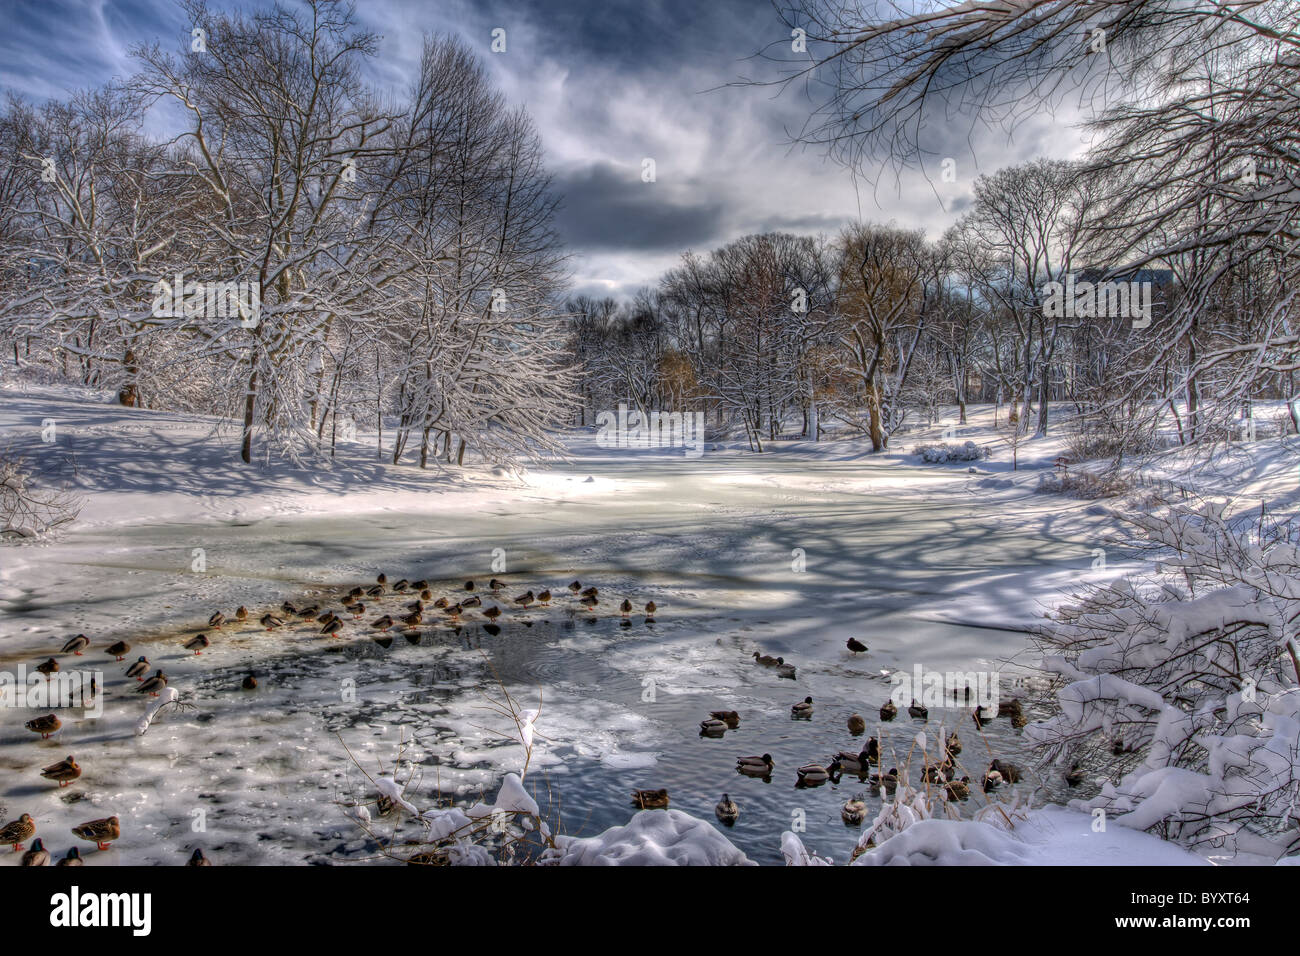 Les canards se rassemblent autour d'une petite zone d'eau libre à la piscine, à l'Extrémité Nord de Central Park le matin après une forte chute de neige Banque D'Images